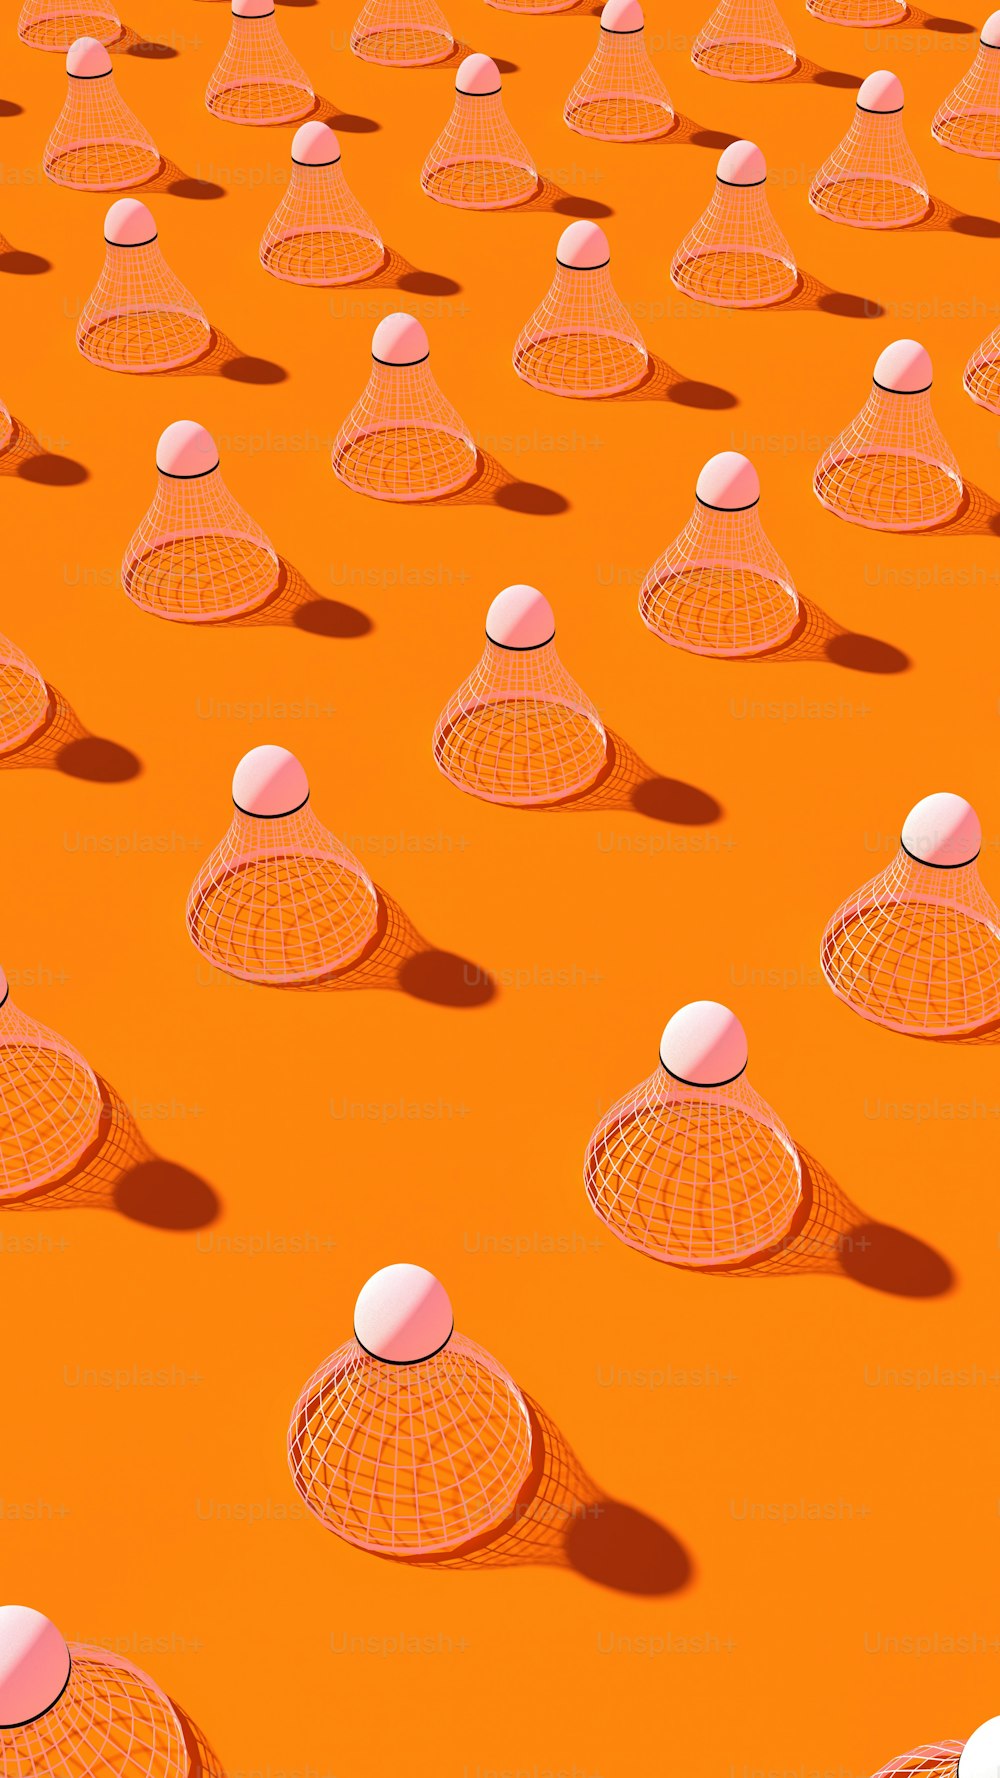 Eine Gruppe weißer Kugeln, die auf einer orangefarbenen Oberfläche sitzen